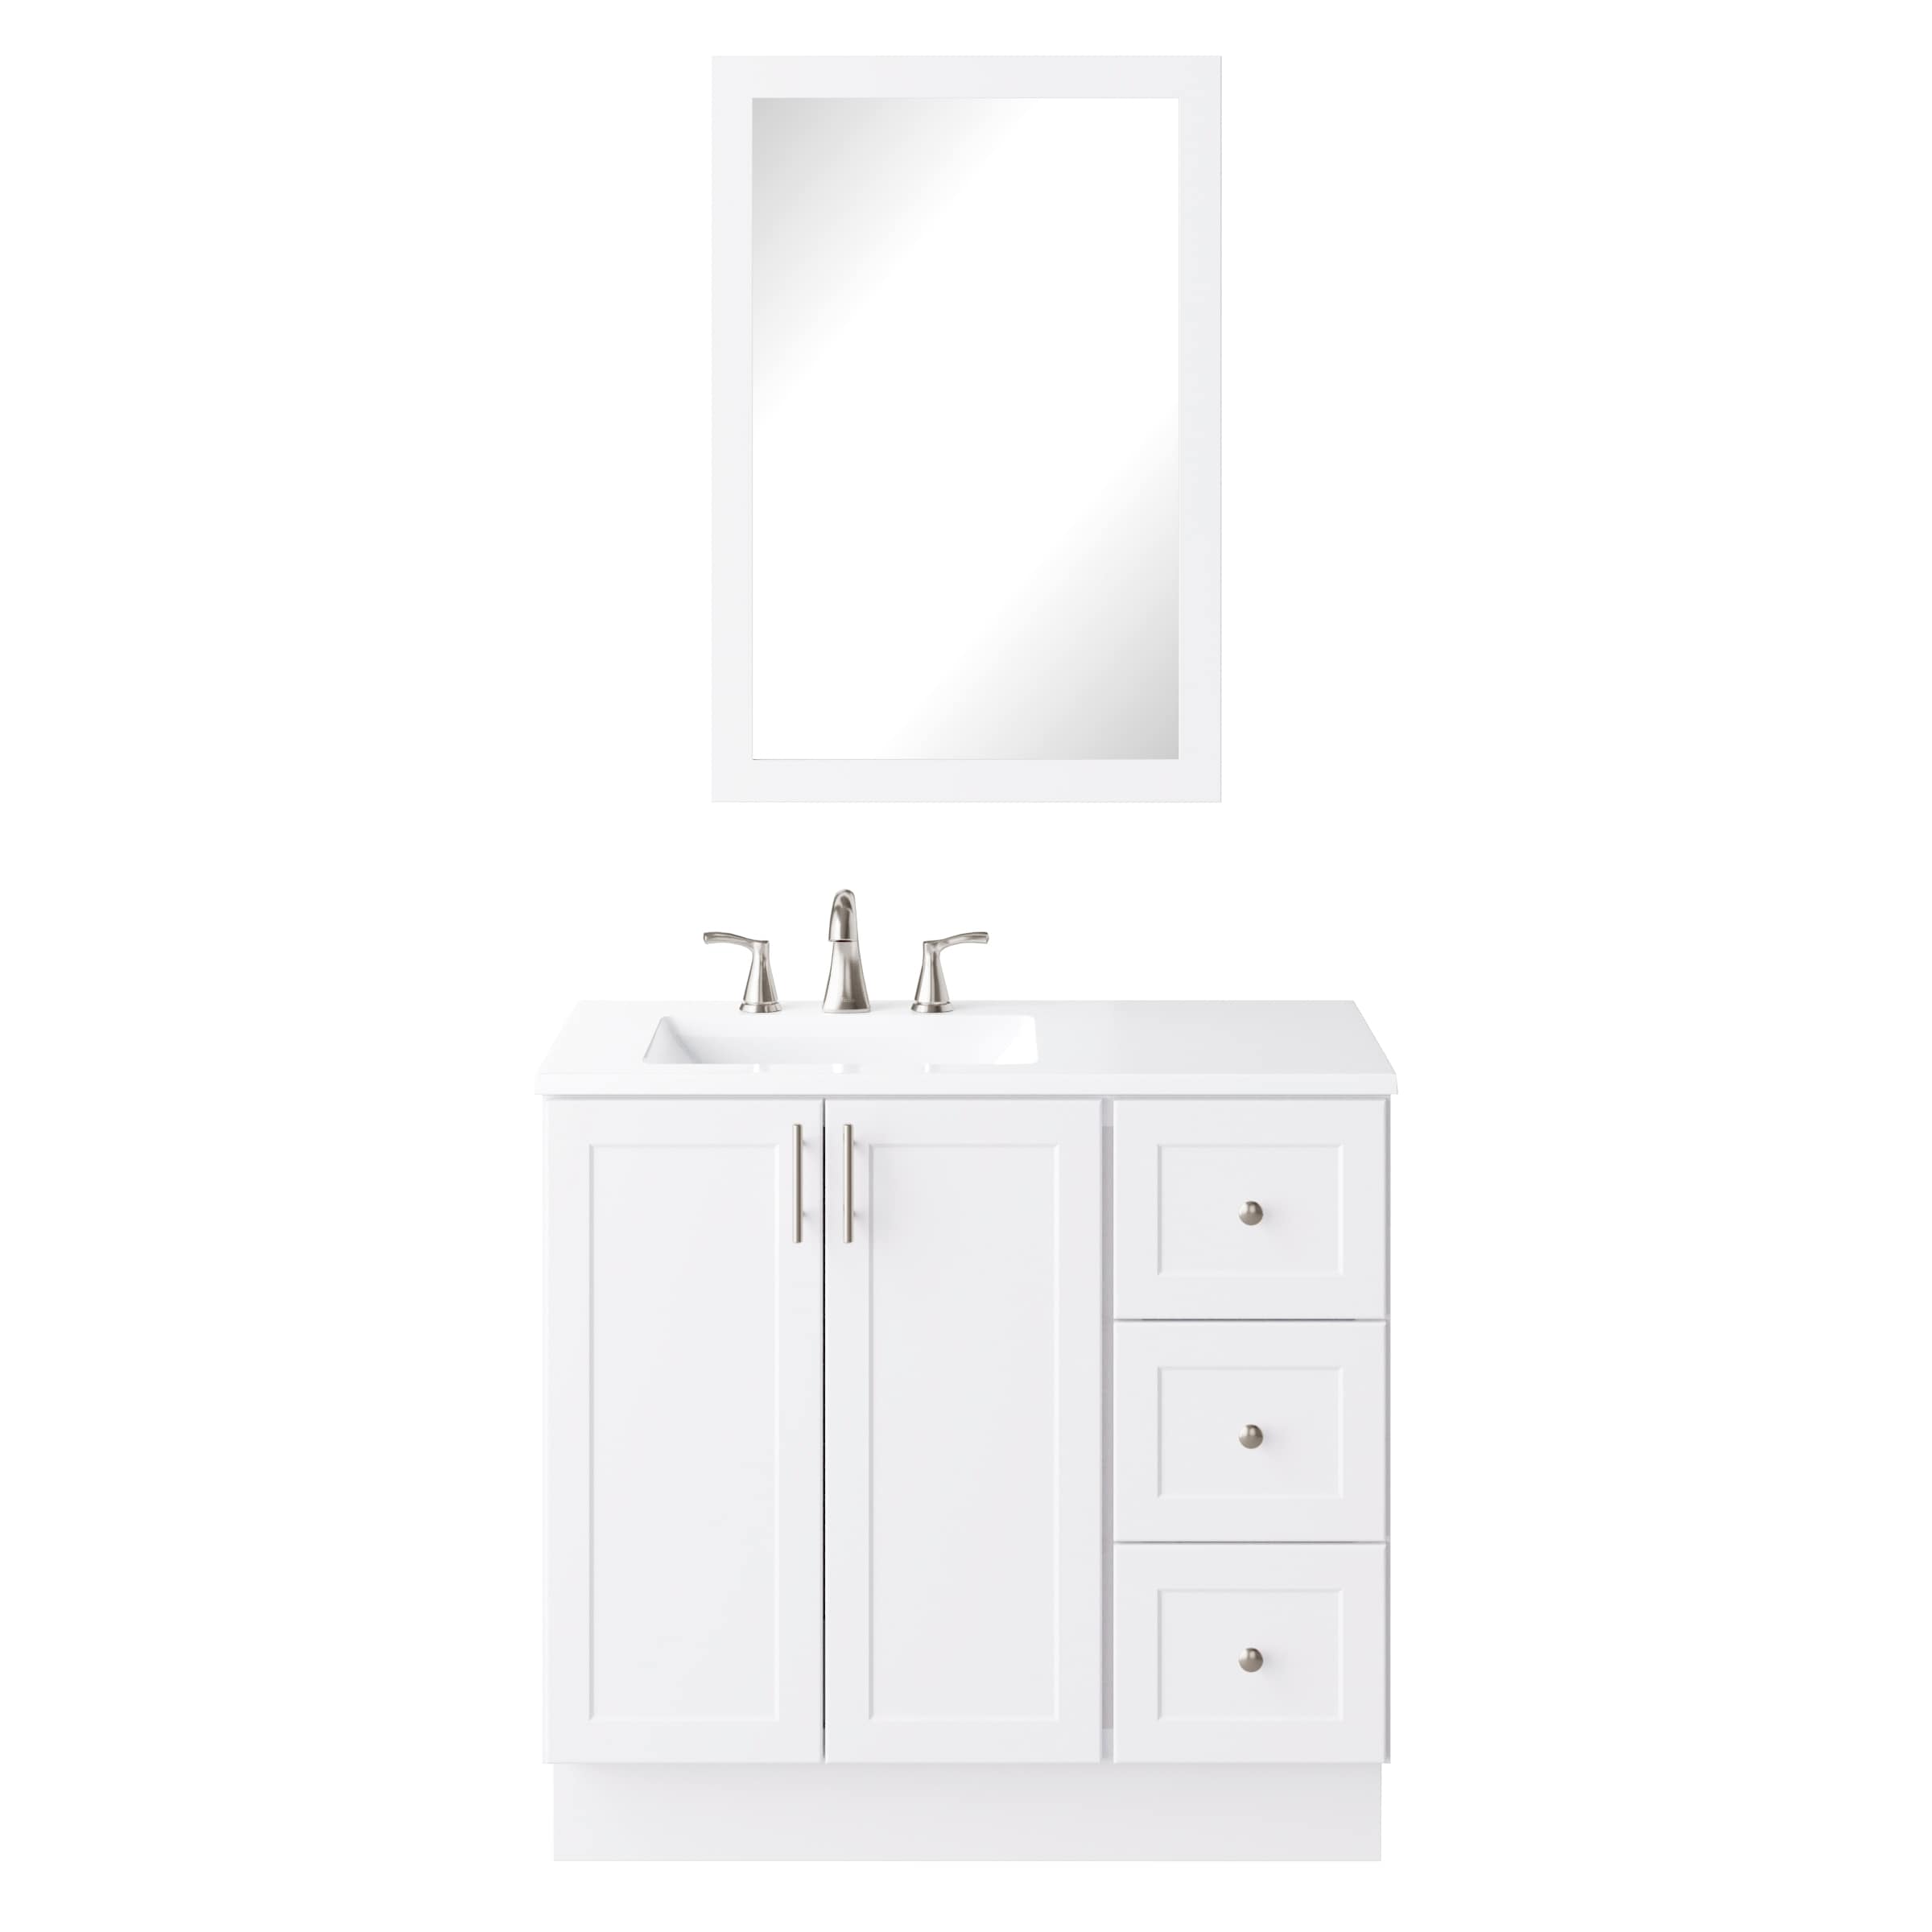 Single Sink Bathroom Vanity, White Vanity With Top 36